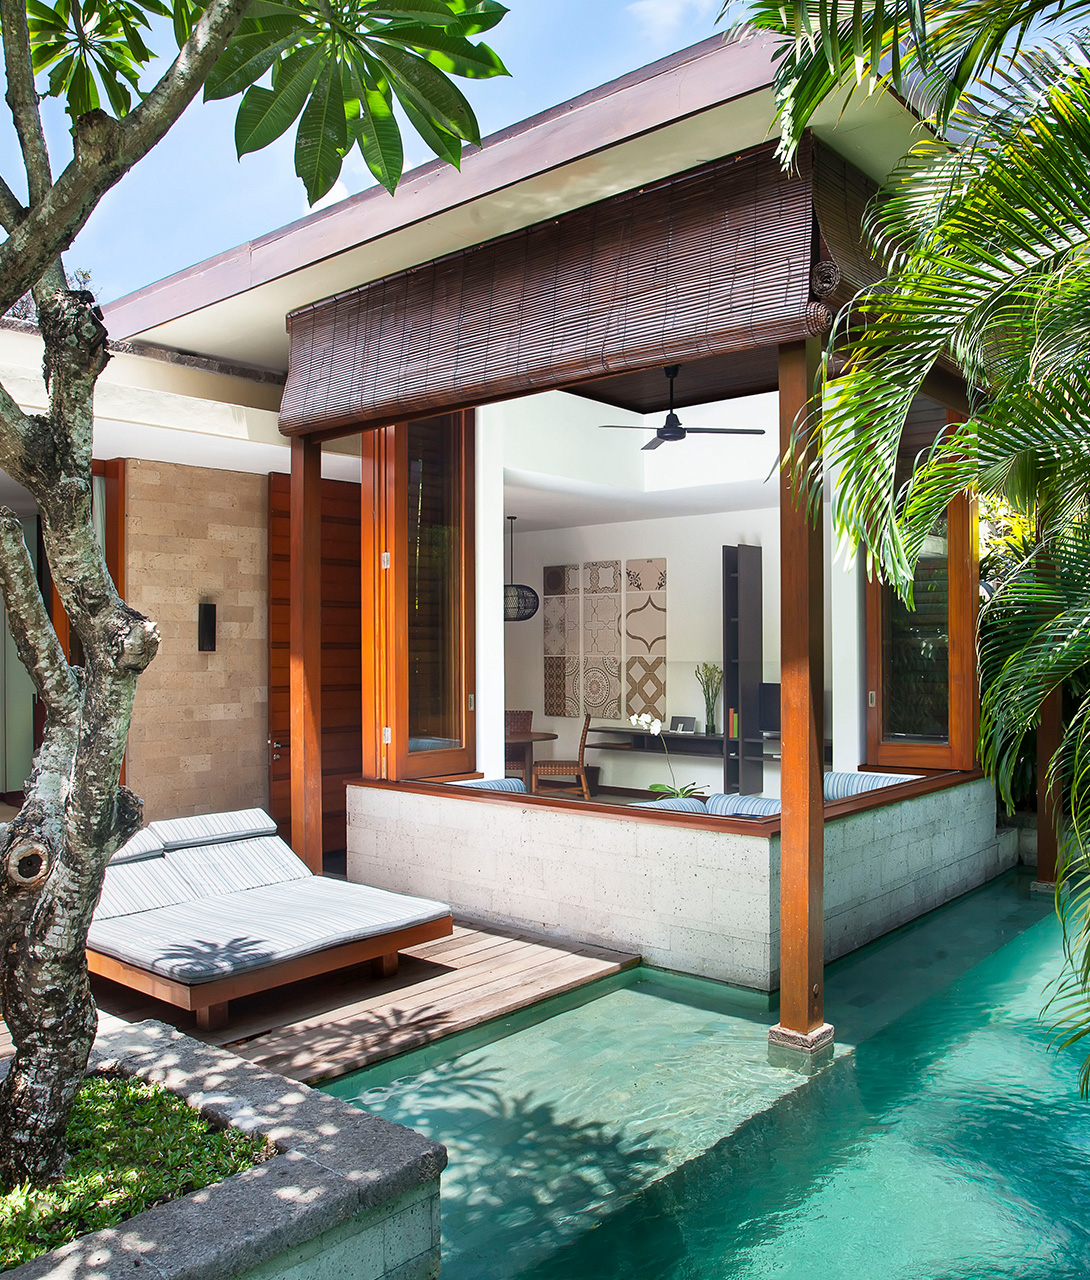 The Elysian Boutique Villa Hotel Architecture in Bali